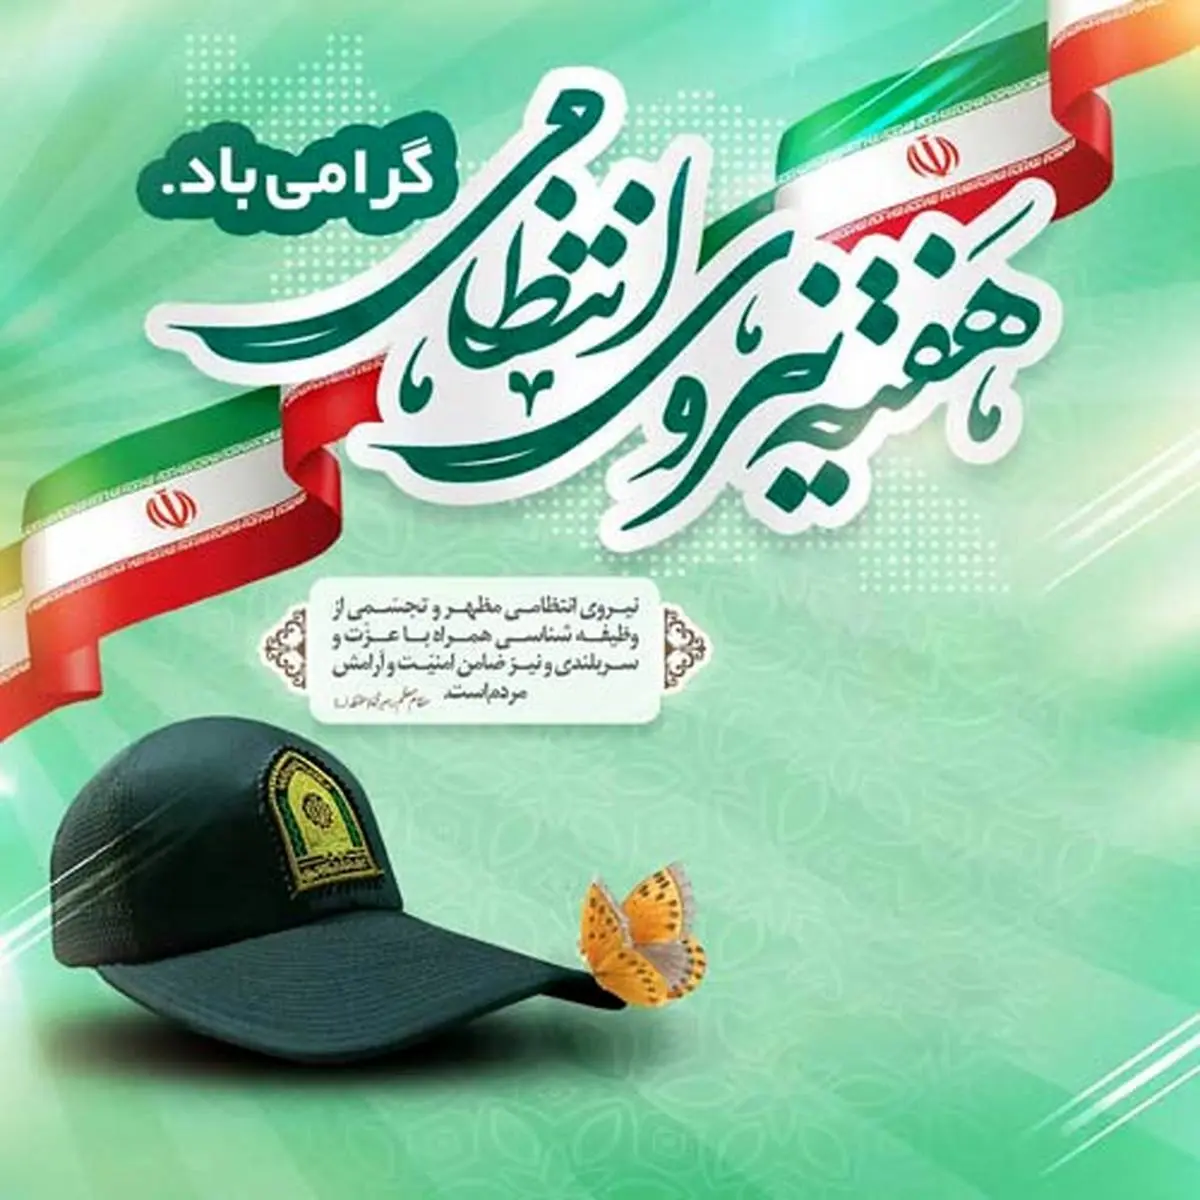  پیام تبریک مدیر عامل صندوق تامین خسارت های بدنی به مناسبت هفته نیروی انتظامی